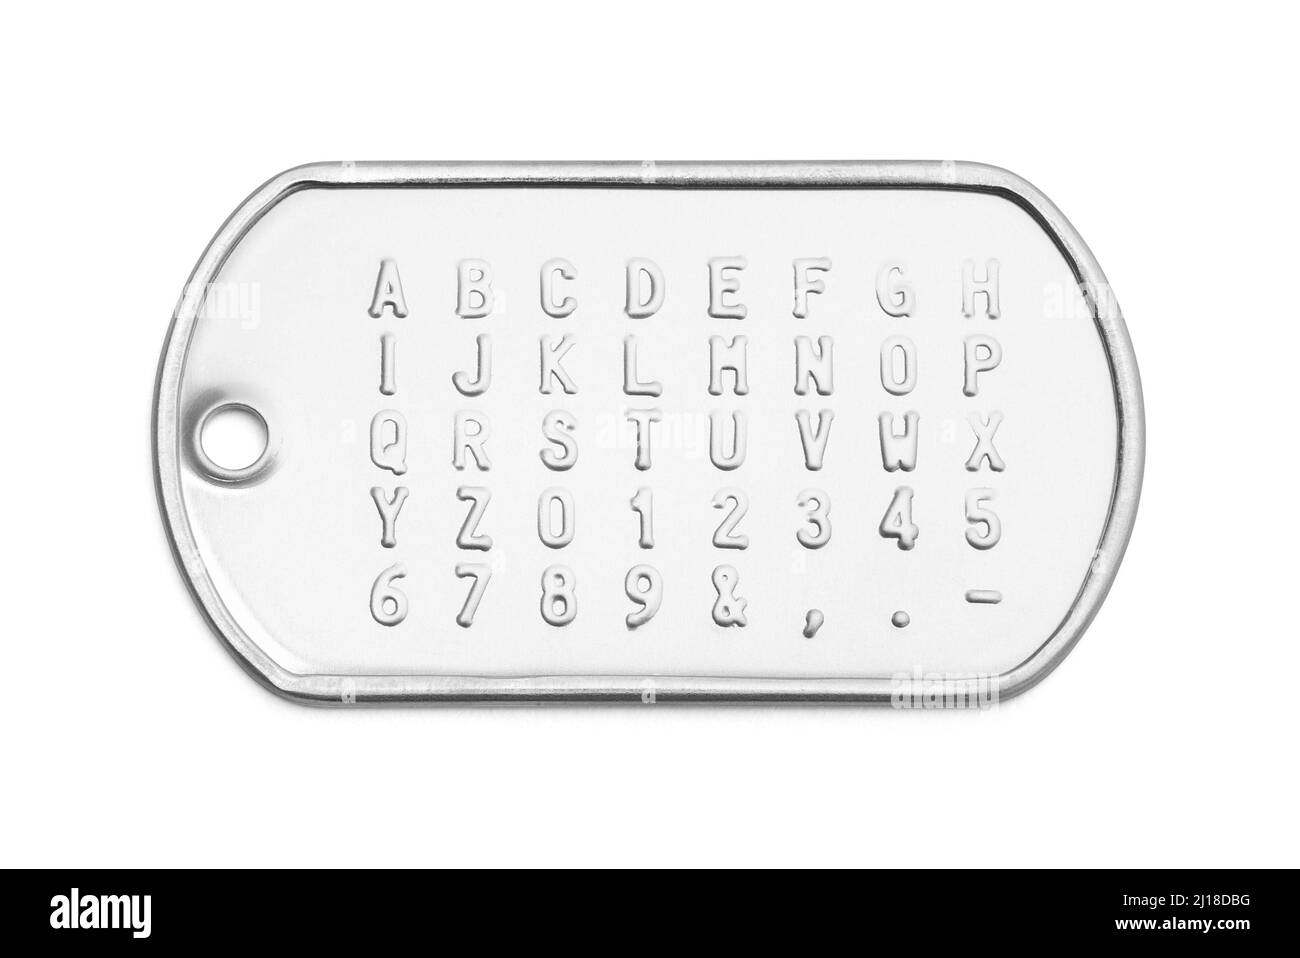 Tag cane in metallo con lettere Alphabet ritagliate. Foto Stock